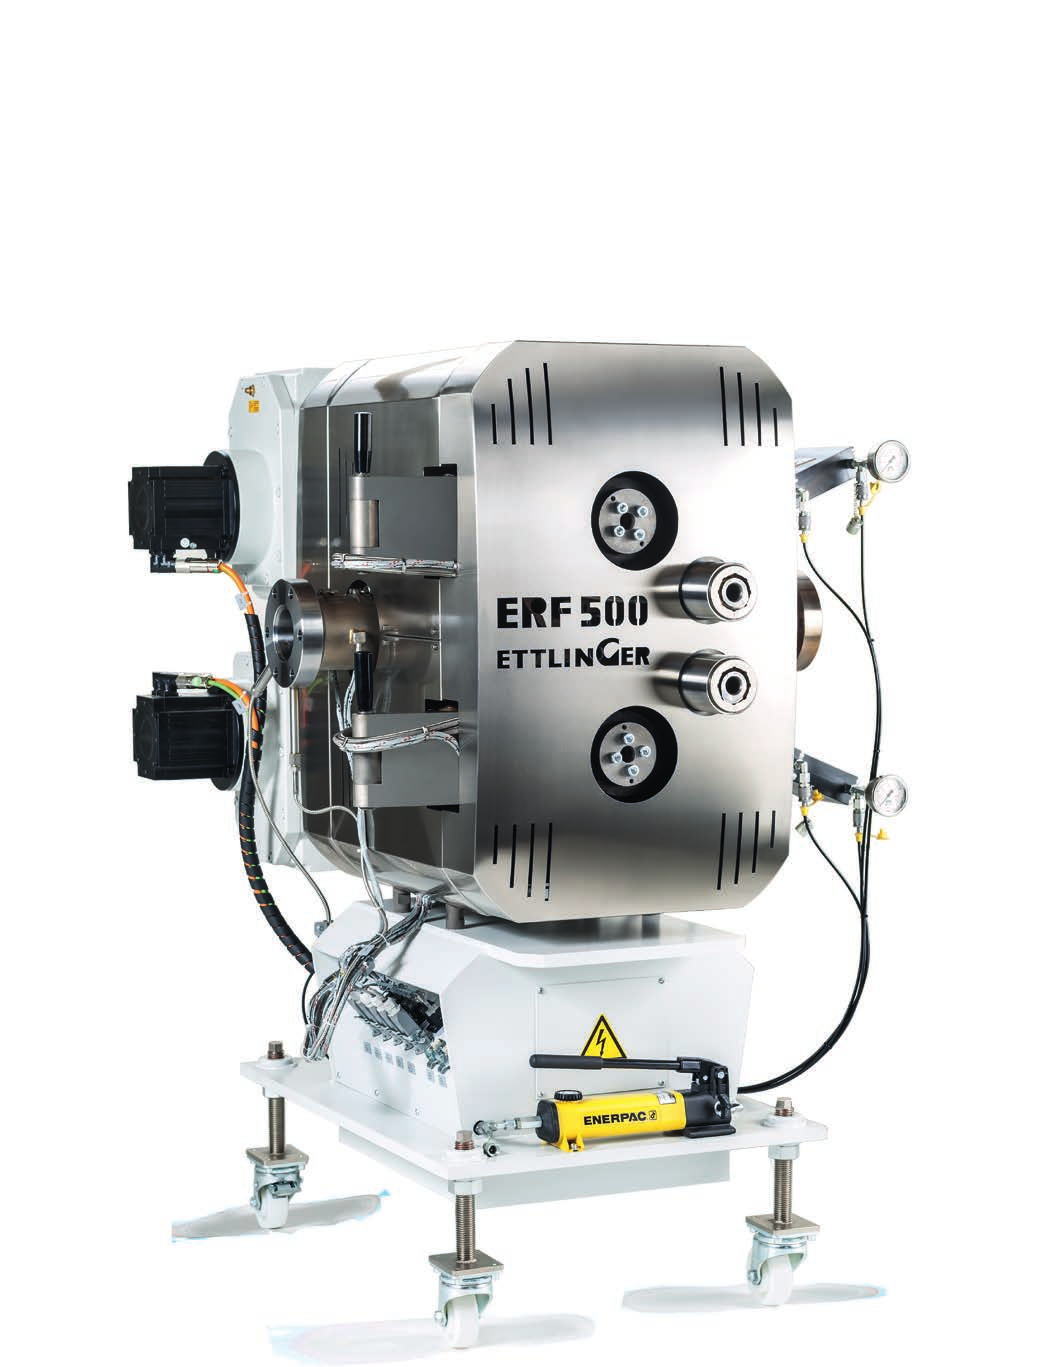 2004 Roderich Ettlinger, 70 li yıllardan beri aklında olan bir hayali hayata geçirmeye başlar. Ettlinger firmasının patentli eriyik filtre sistemi ERF 200 için ilk sipariş gerçekleşir.